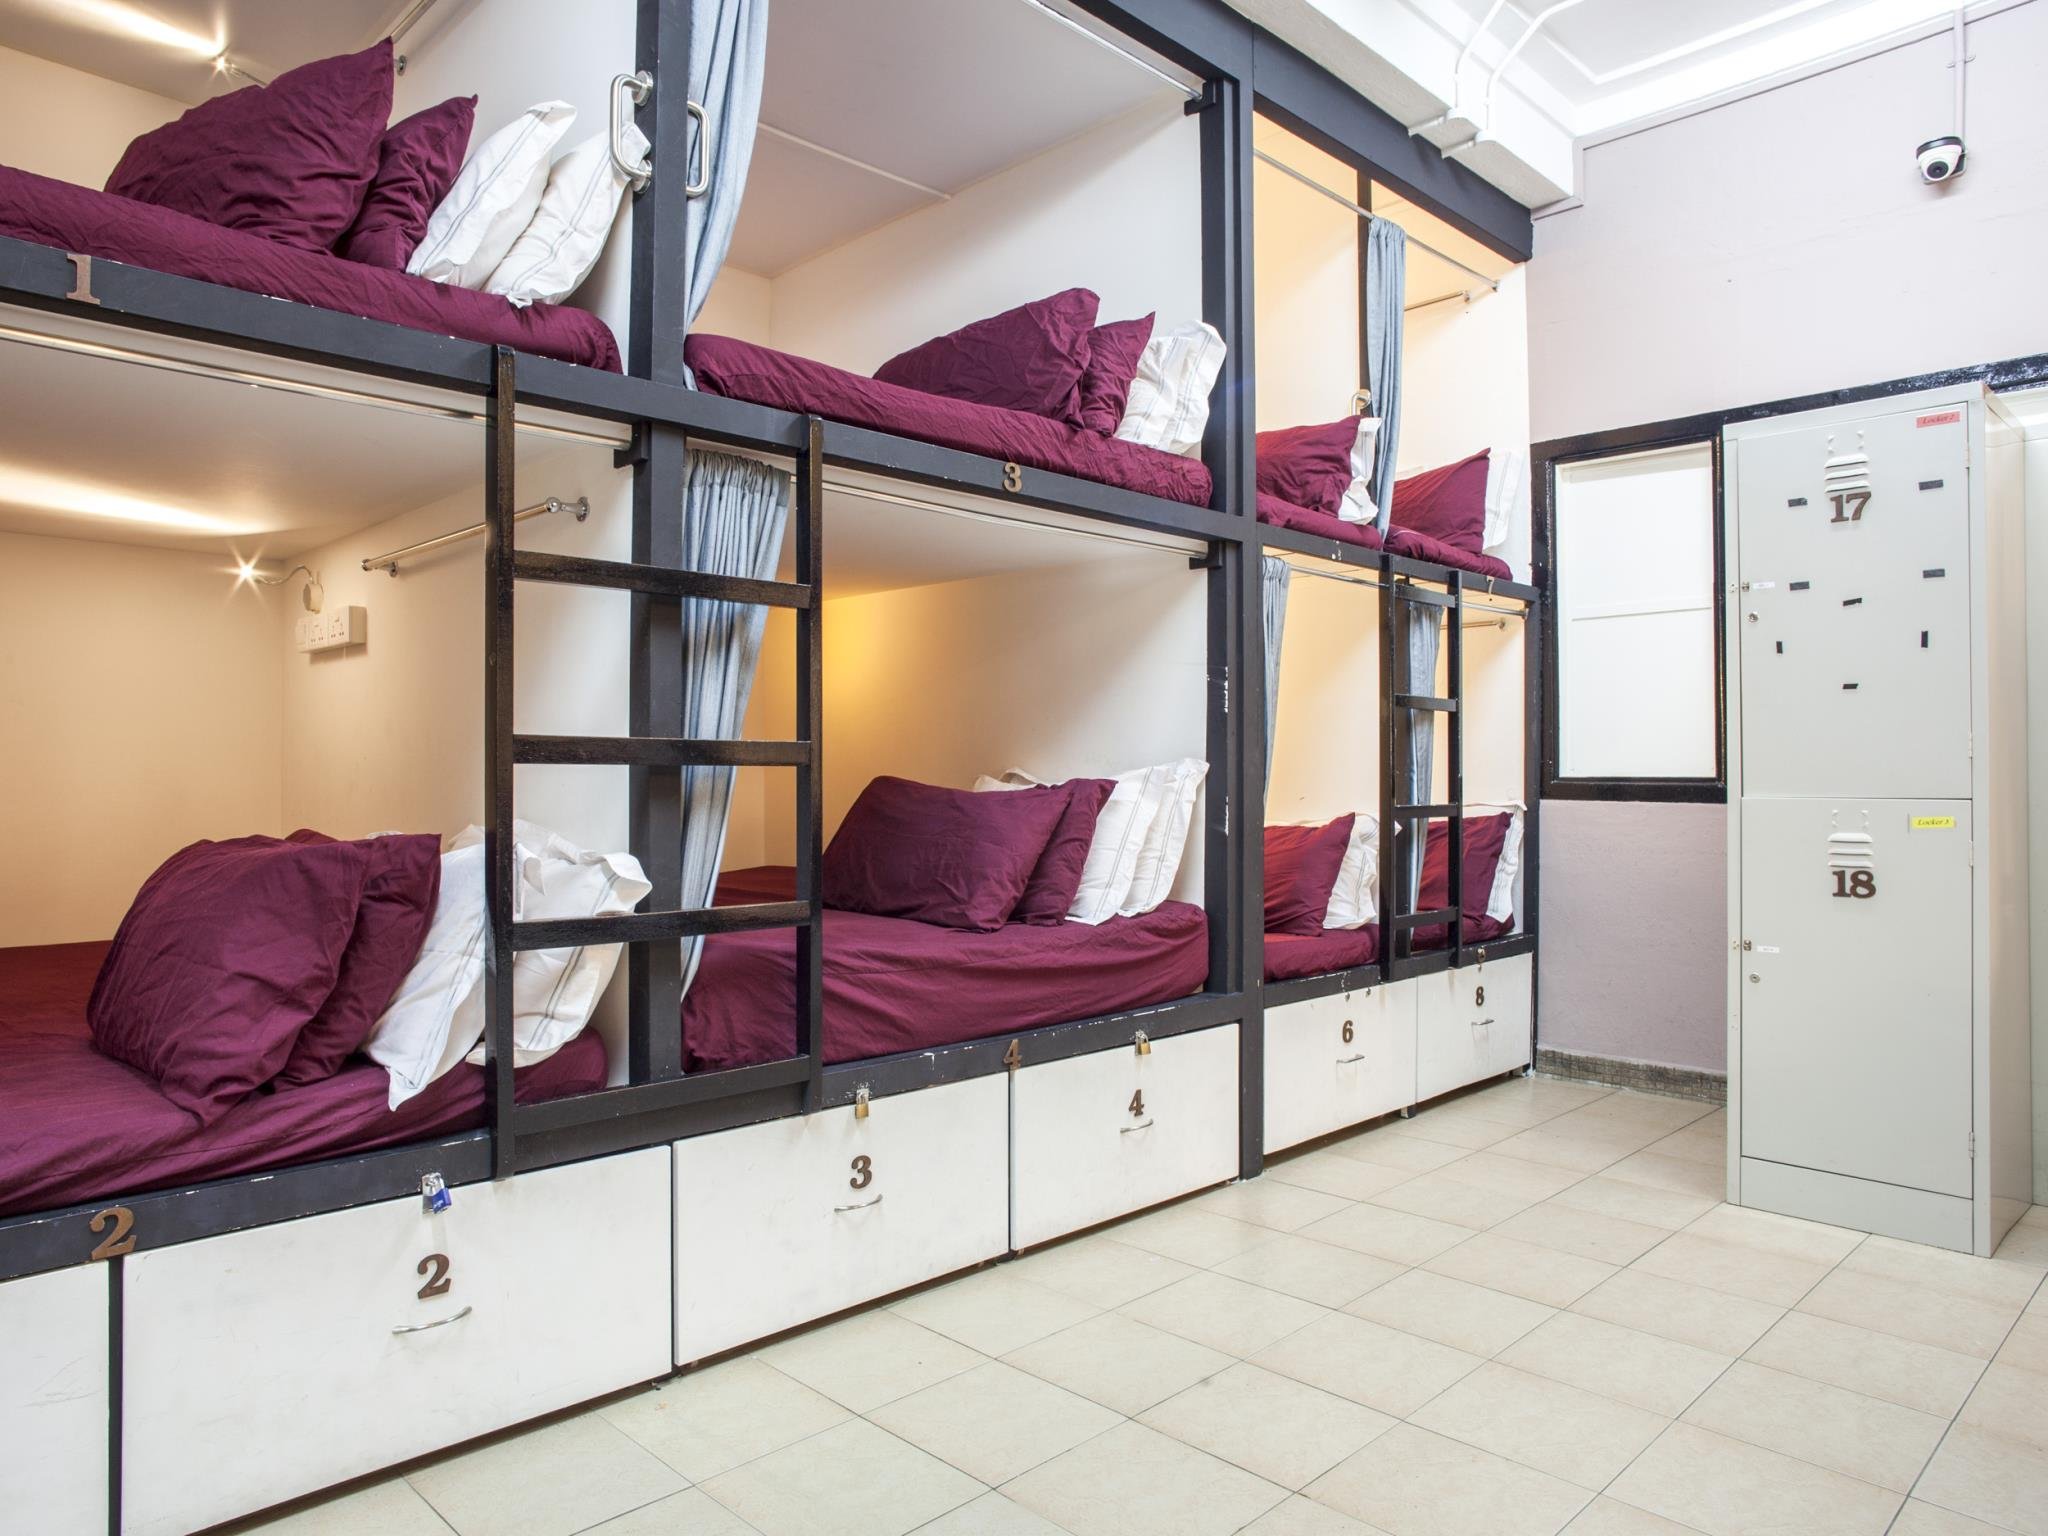 Название общежития. Кровати для хостела. Двухъярусные кровати для хостелов. Капсульные кровати для хостела. Кровати капсулы для хостела.